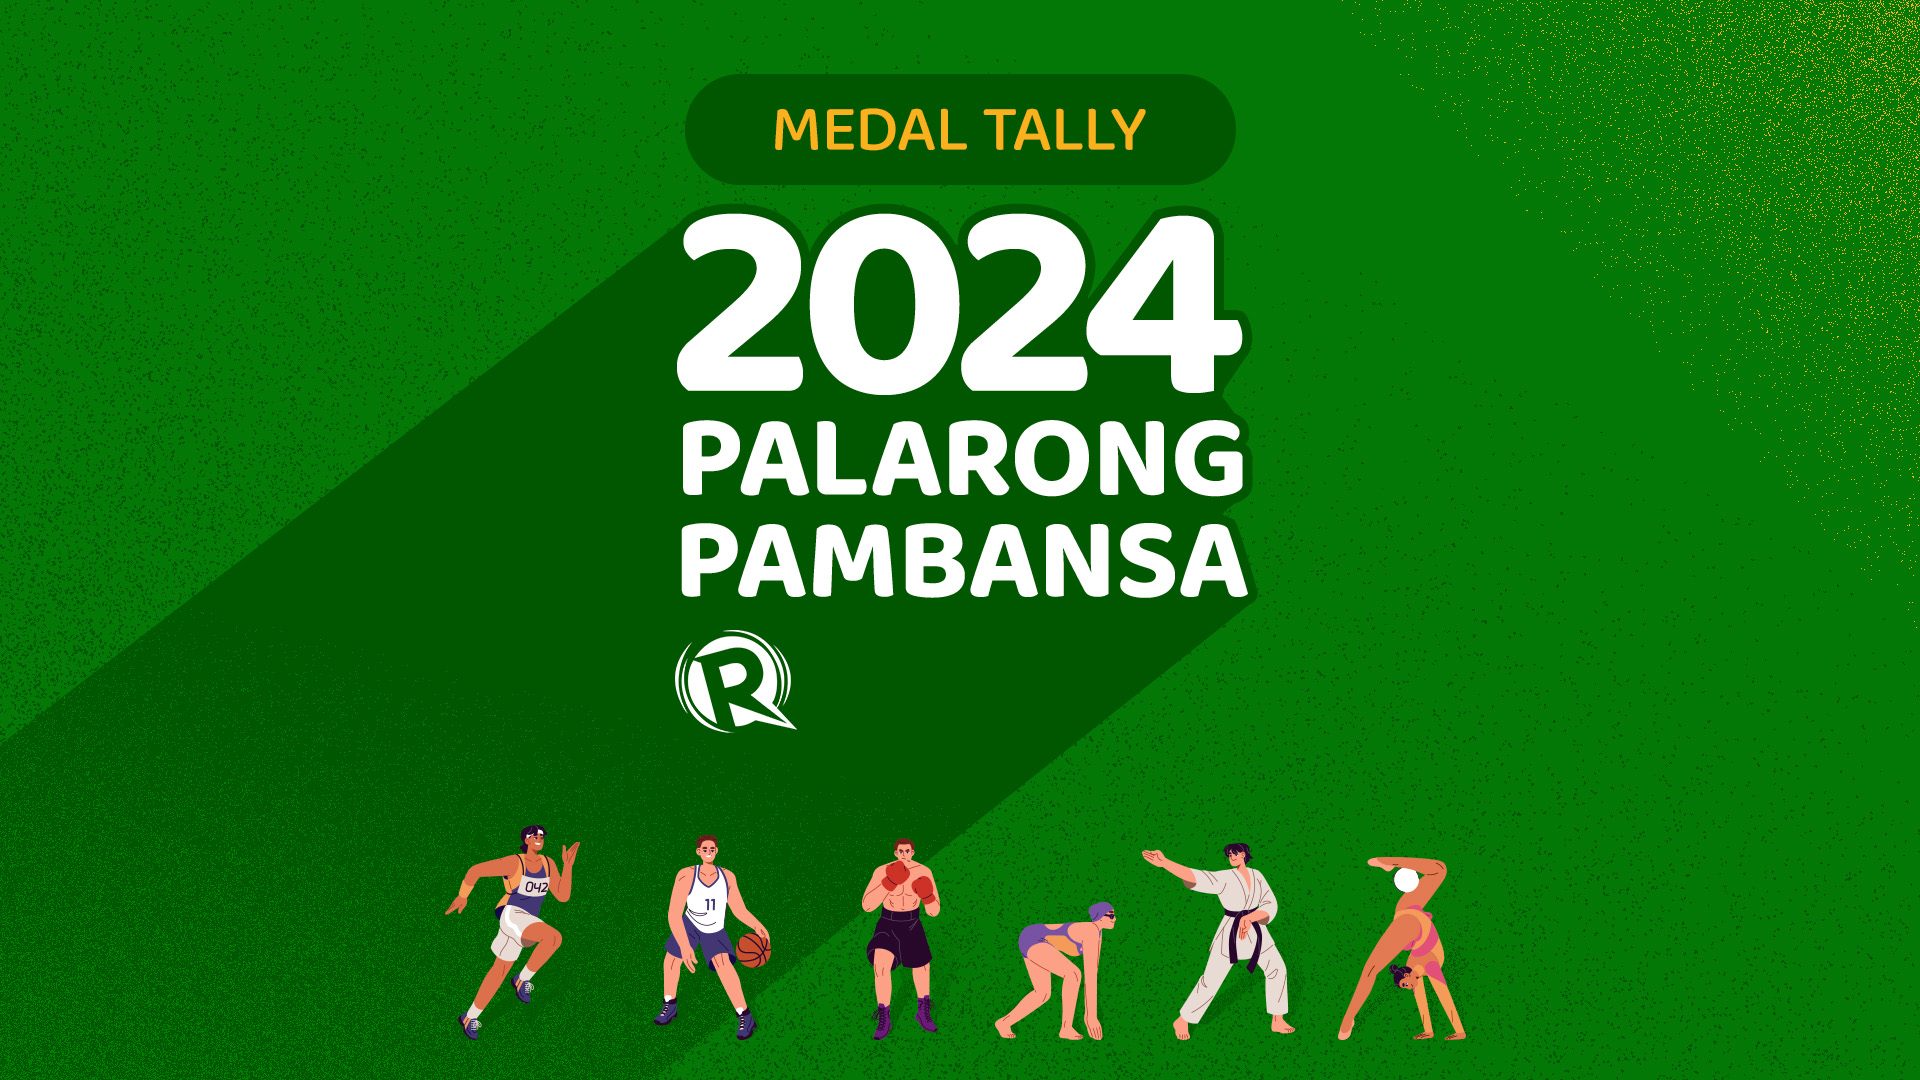 MEDAL TALLY: Palarong Pambansa 2024